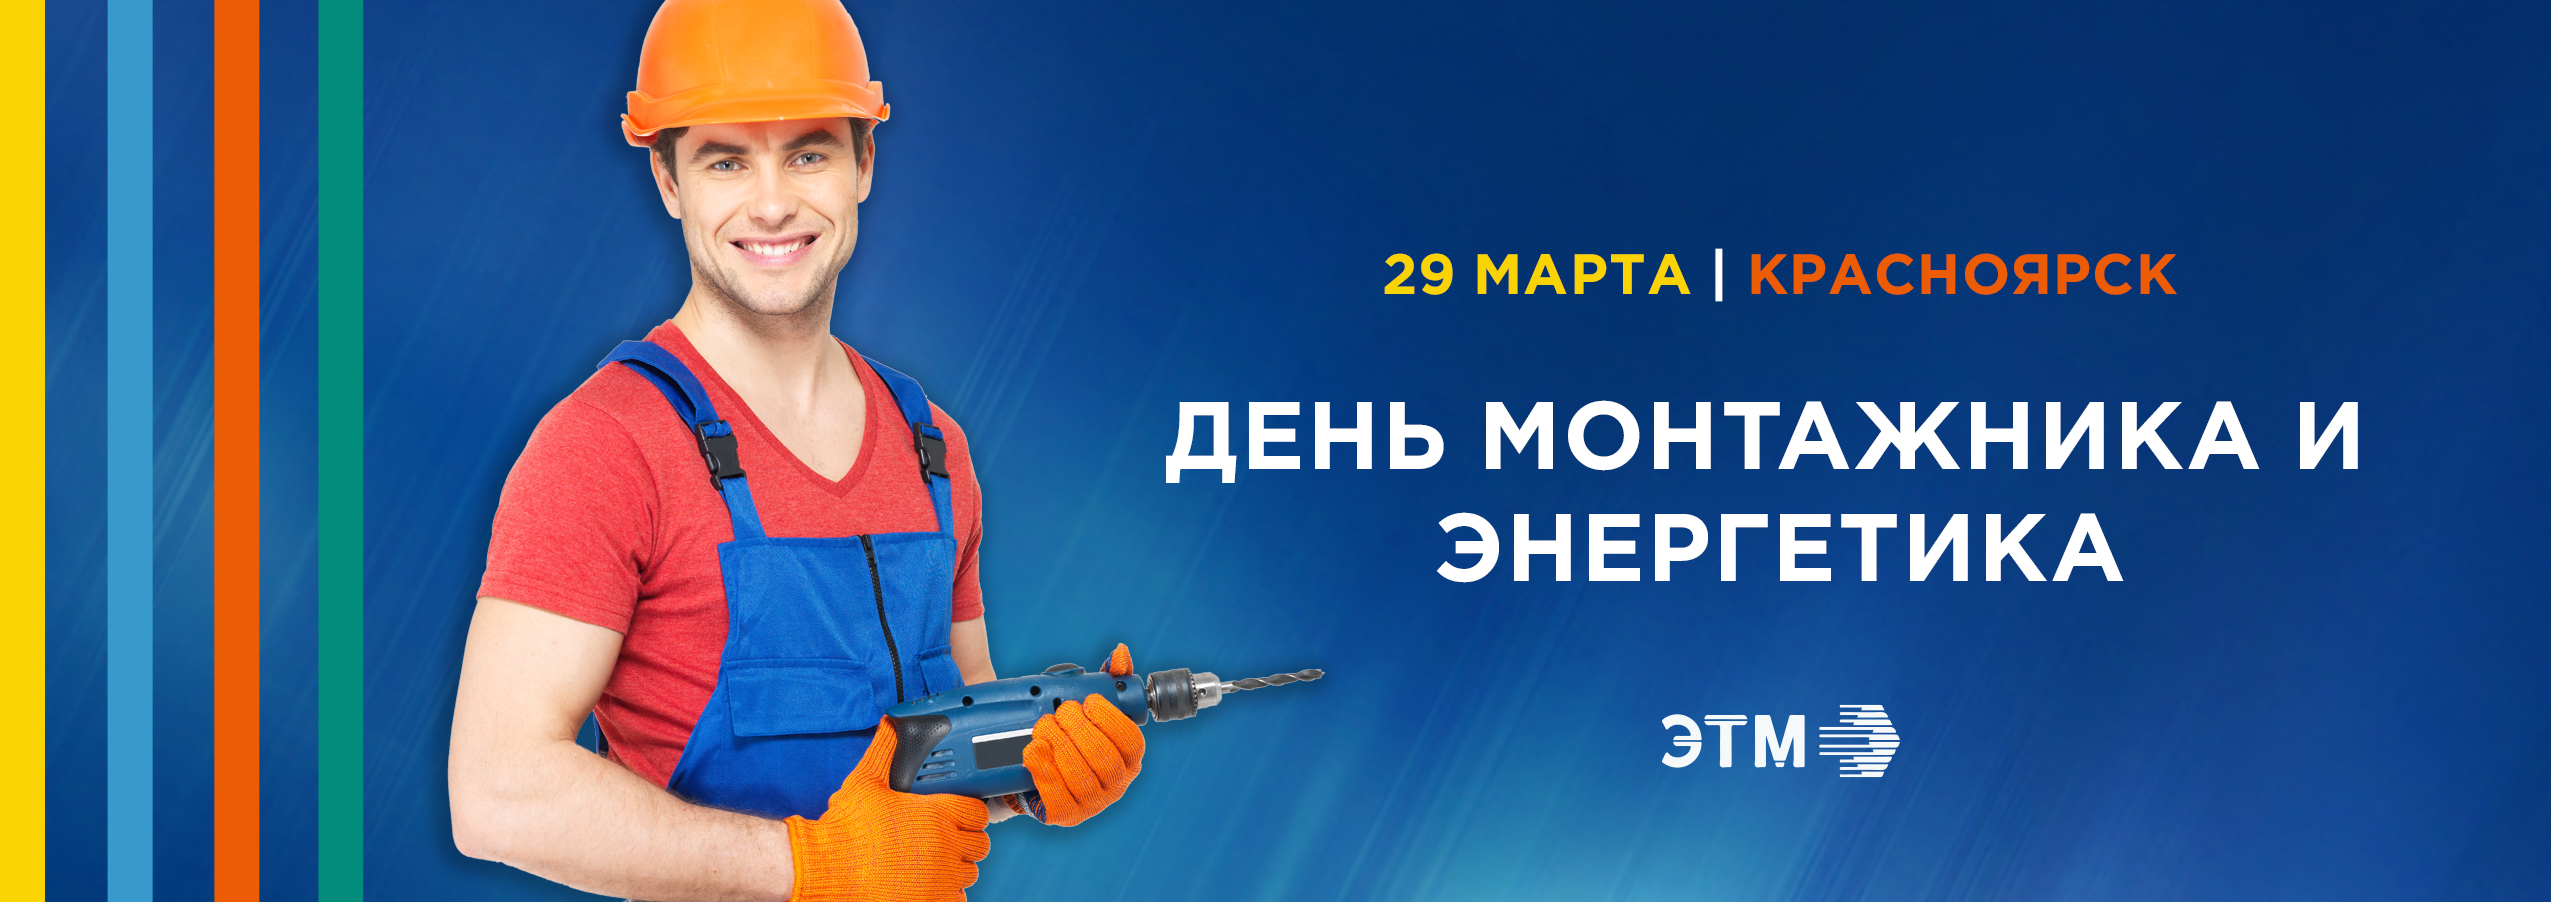 День монтажника  и энергетика в Красноярске